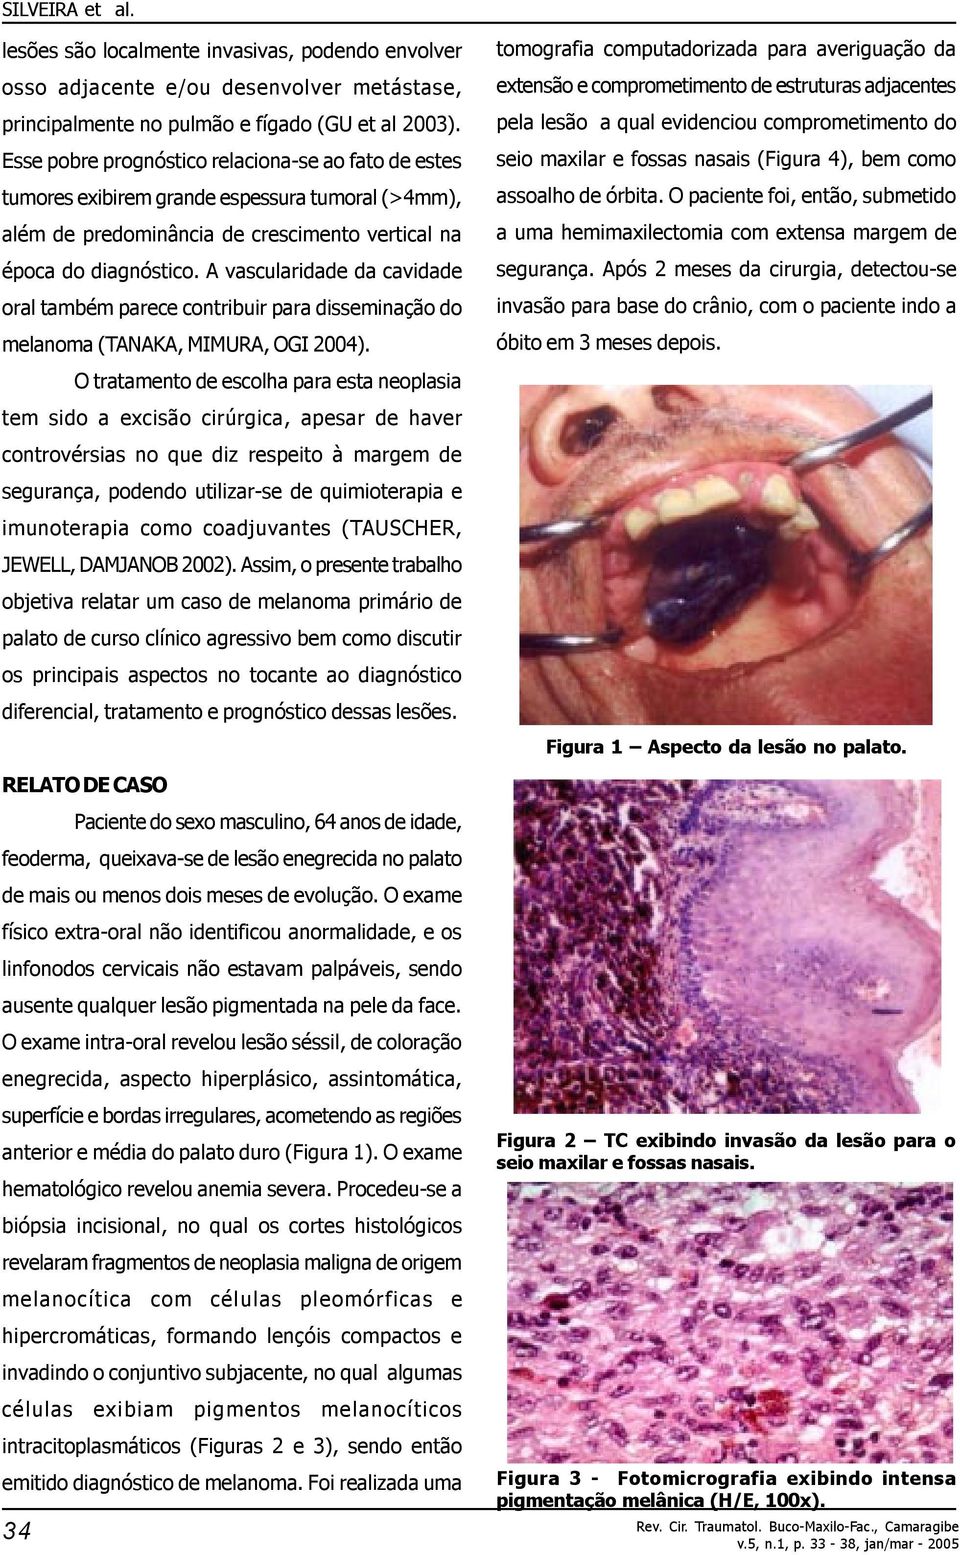 A vascularidade da cavidade oral também parece contribuir para disseminação do melanoma (TANAKA, MIMURA, OGI 2004).